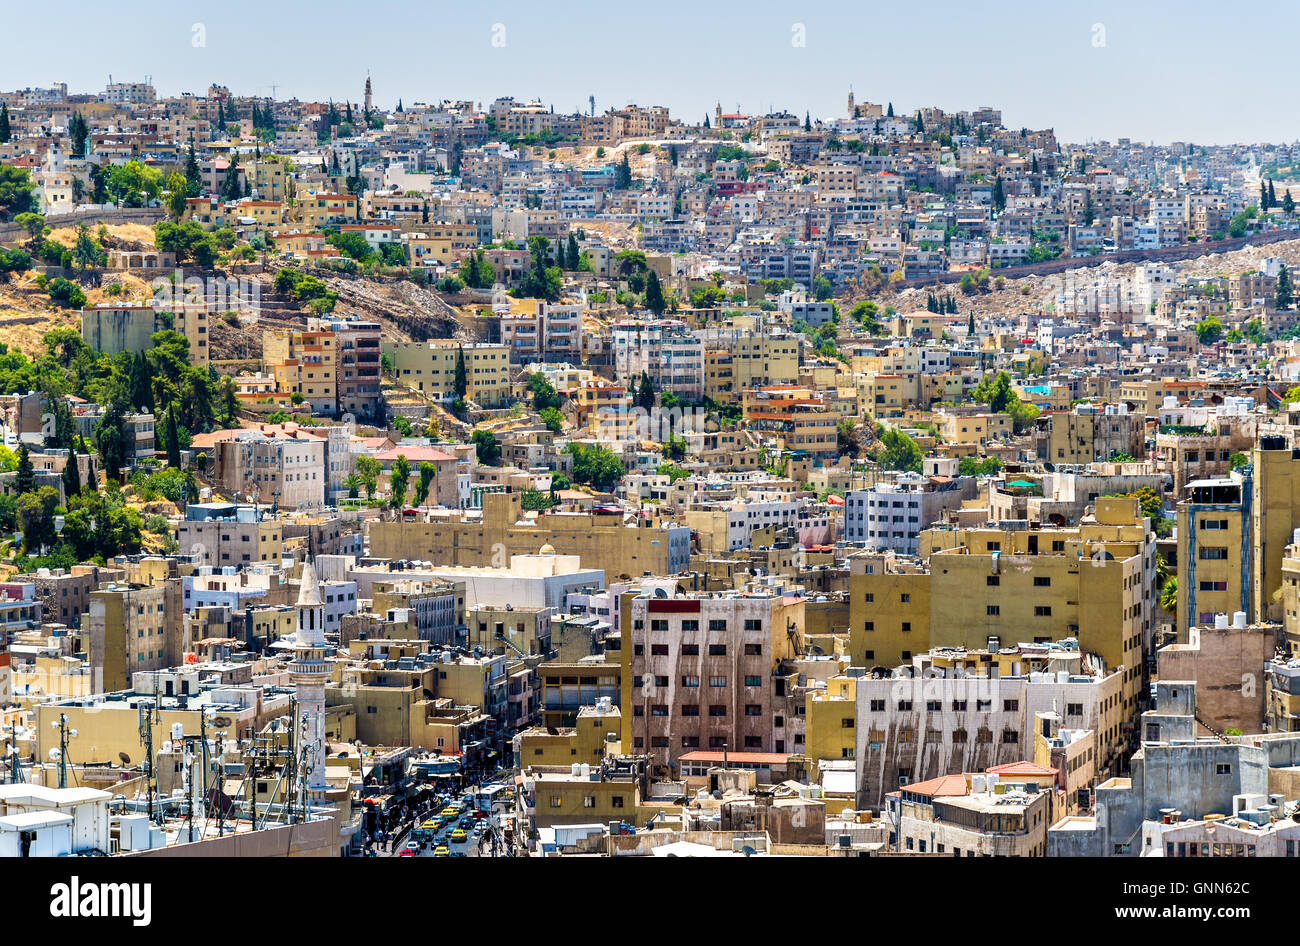 Cityscape of Amman, Jordan Stock Photo